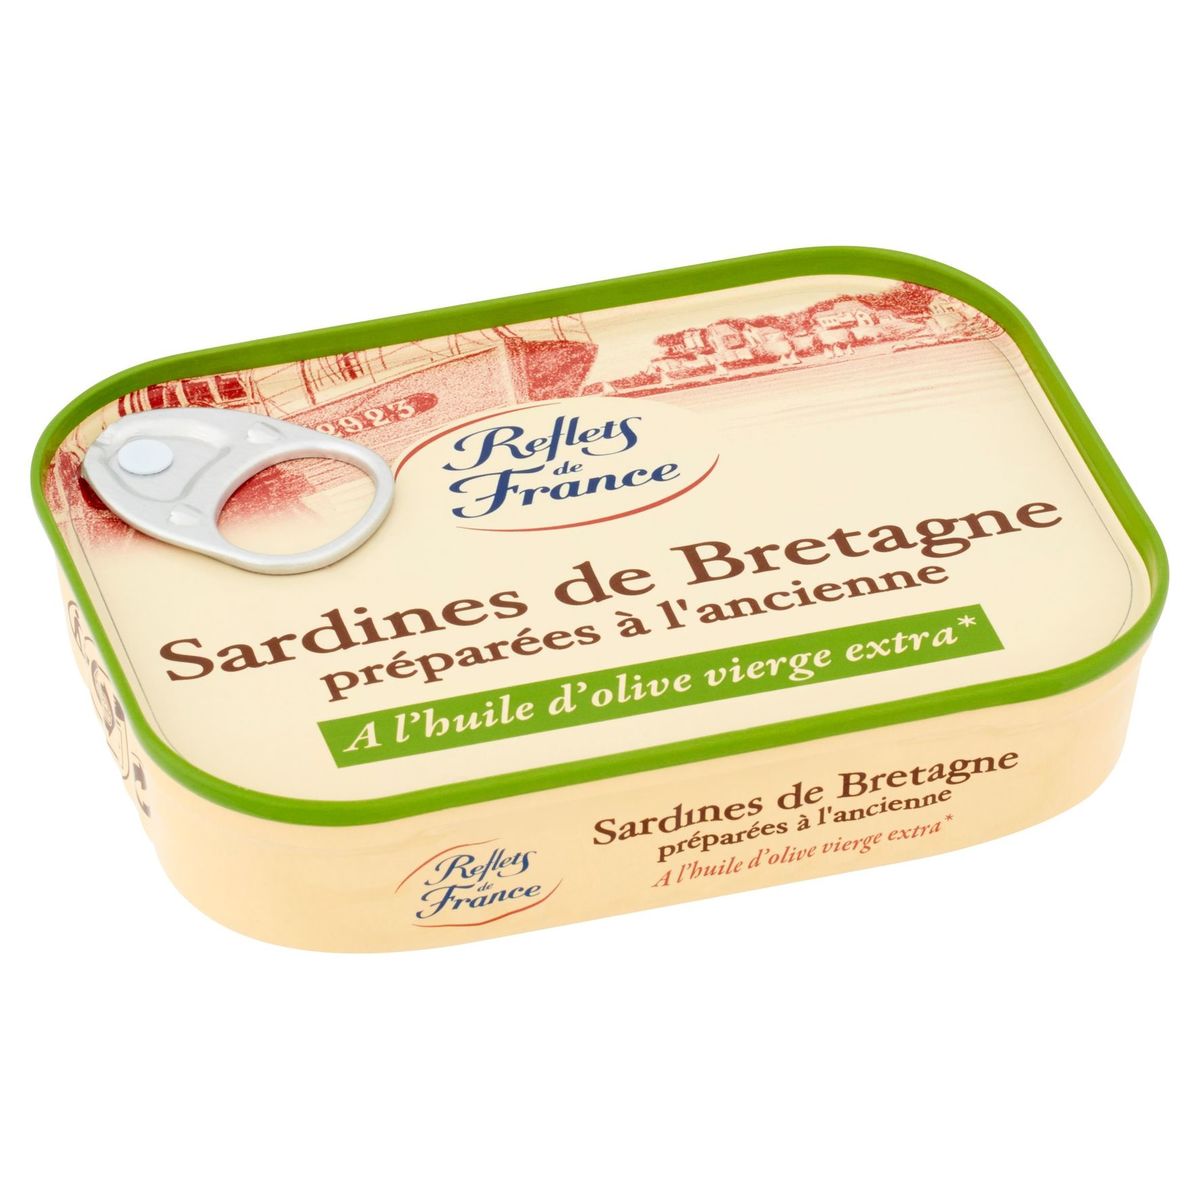 Reflets de France Sardines de Bretagne Préparées à l'Ancienne